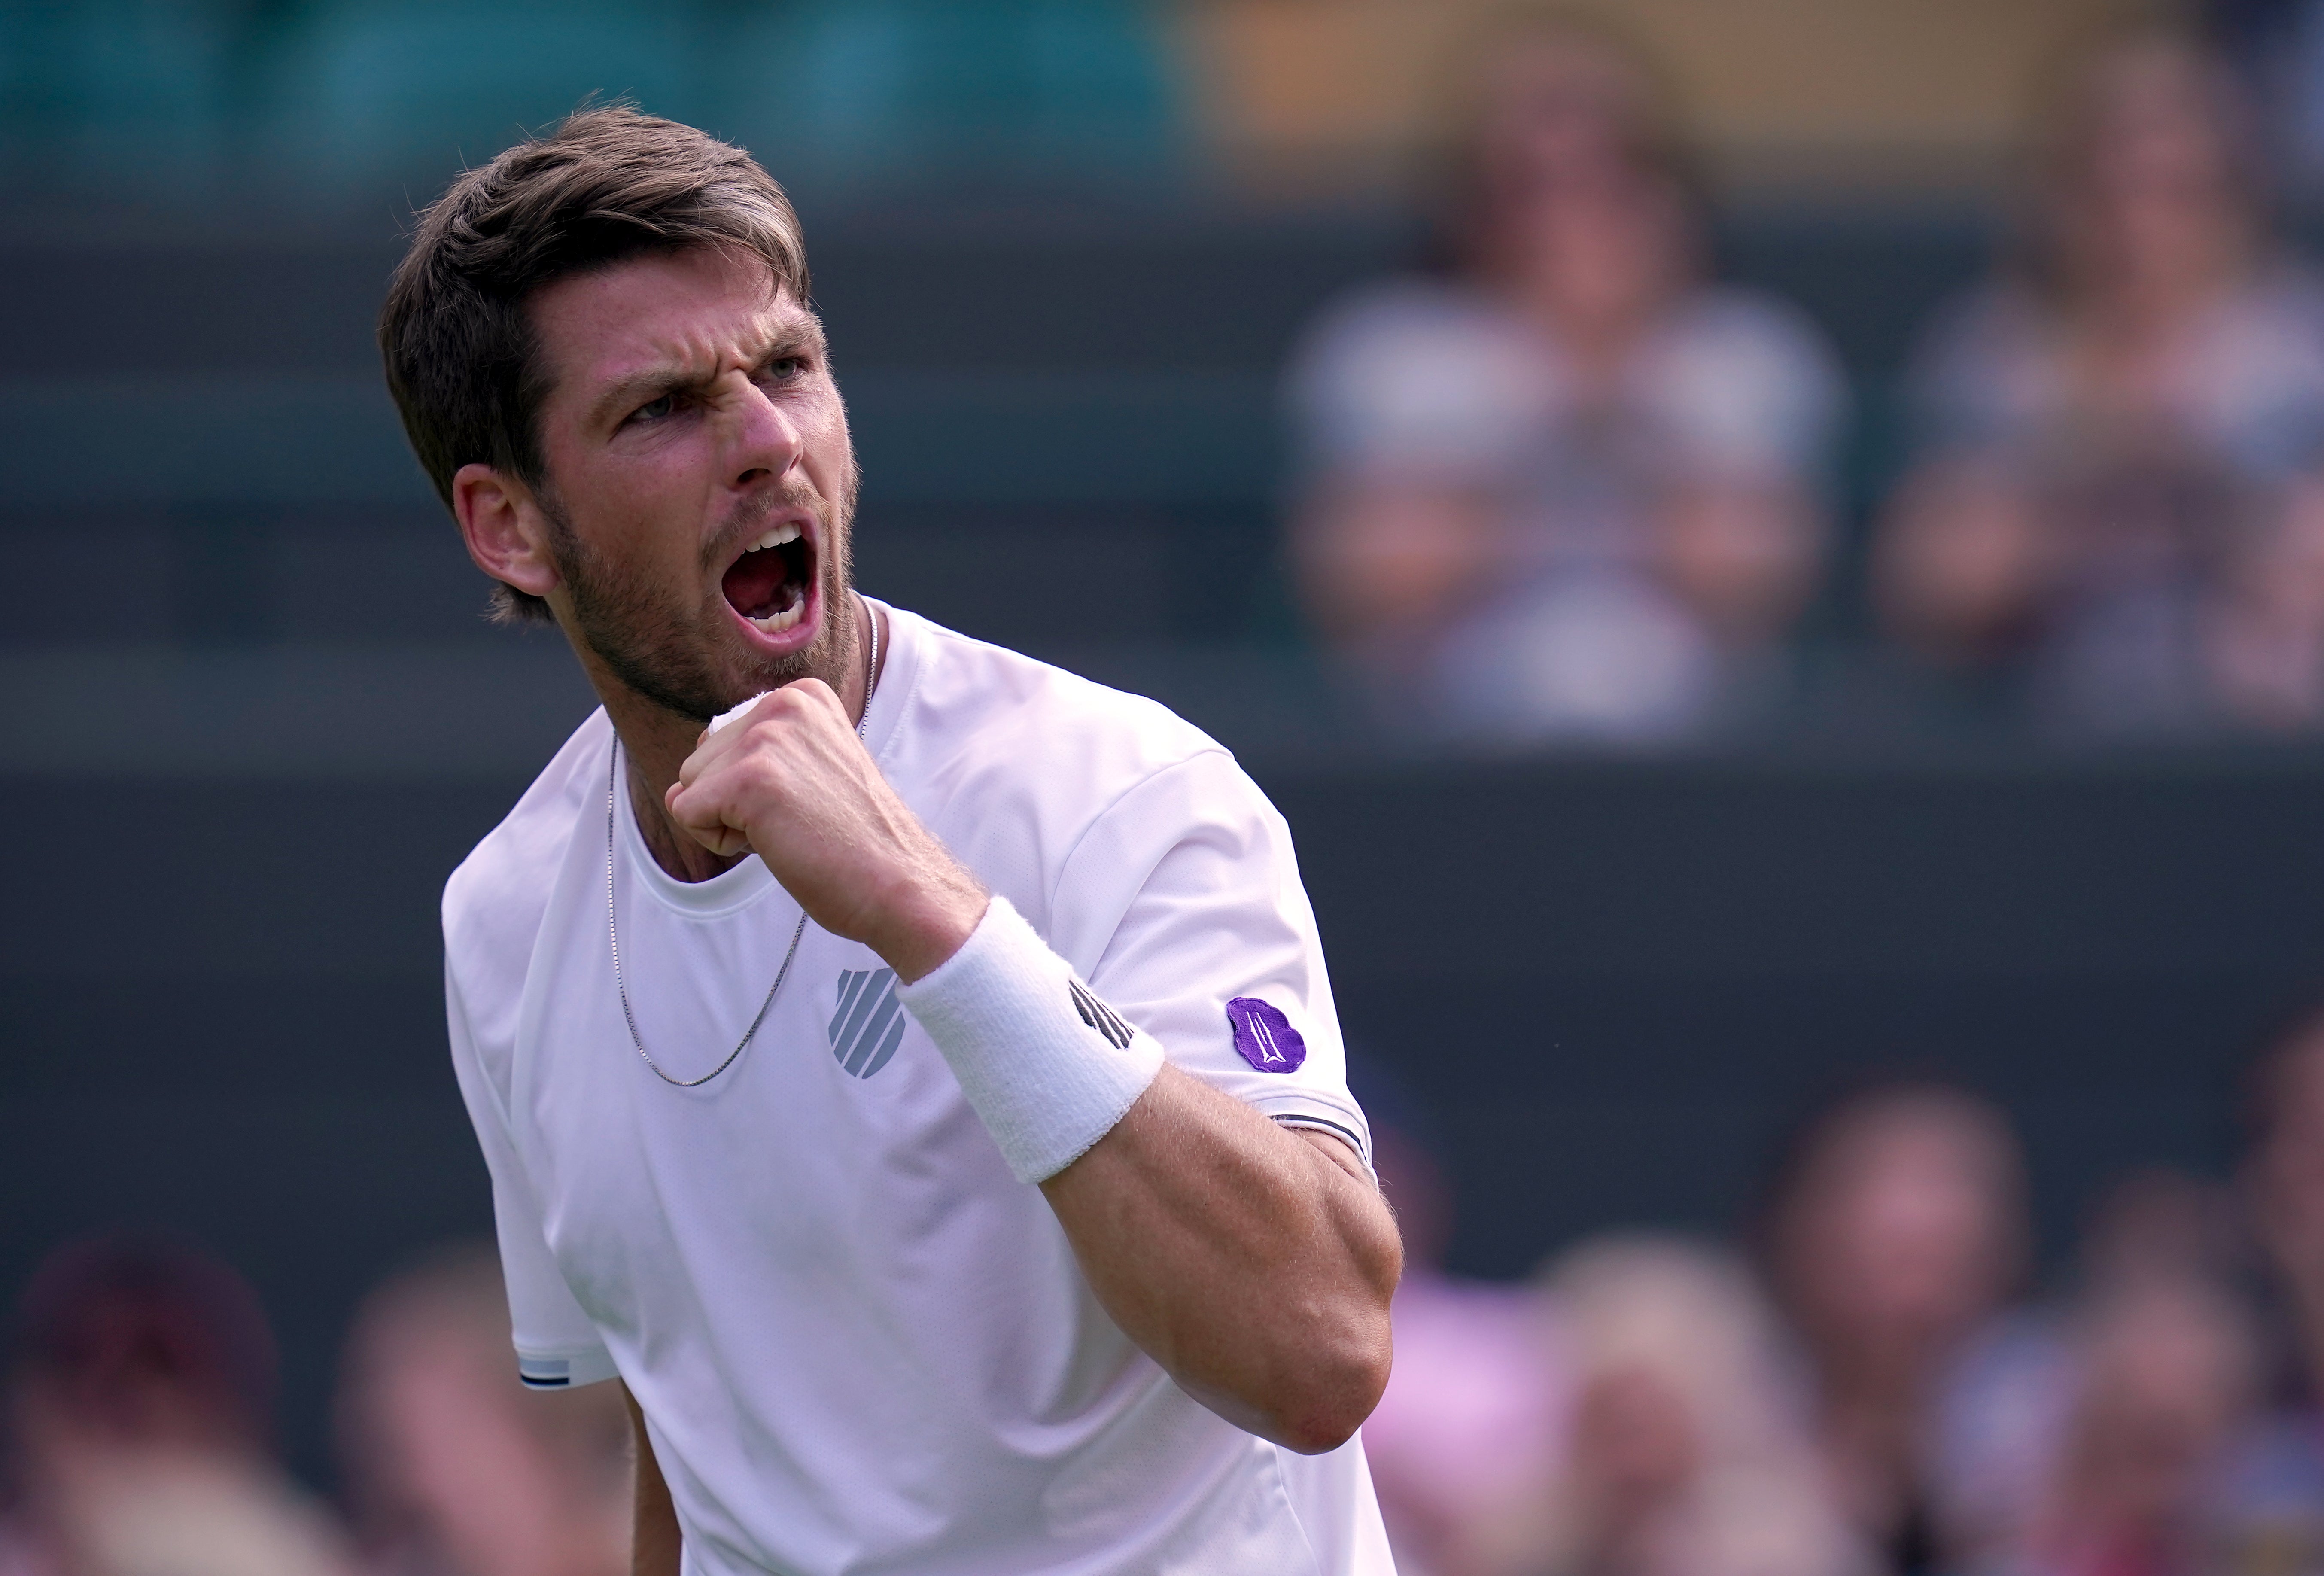 Cameron Norrie has roared into the Wimbledon semi-finals (John Walton/PA)